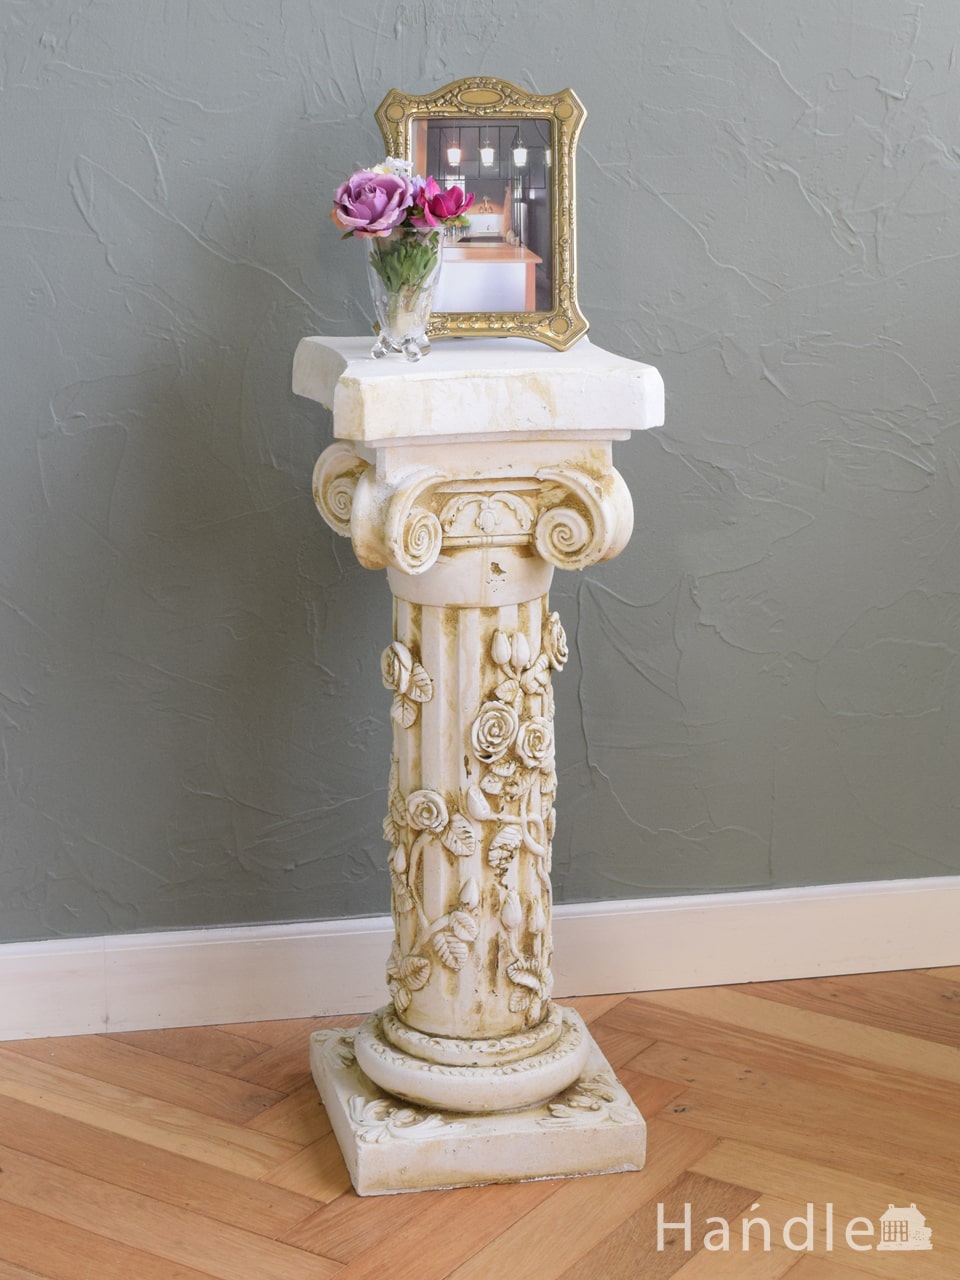 ヨーロッパ調のおしゃれな花台、バラの装飾が美しいアンティーク風のプランツスタンド (n21-050)